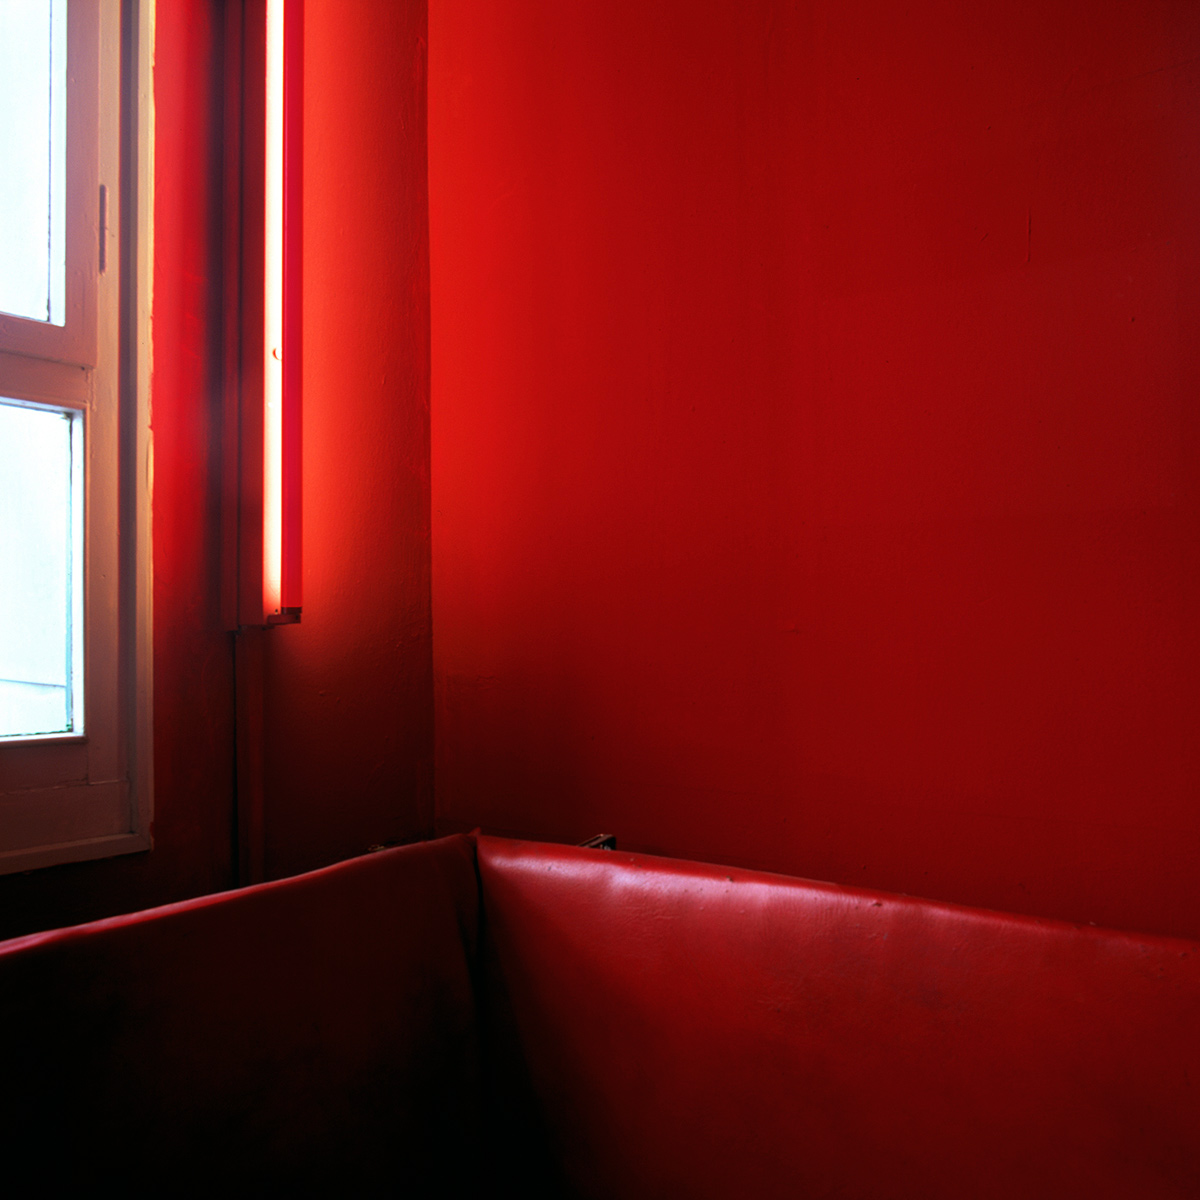 Anna Lehmann-Brauns -- Sun in an Empty Room